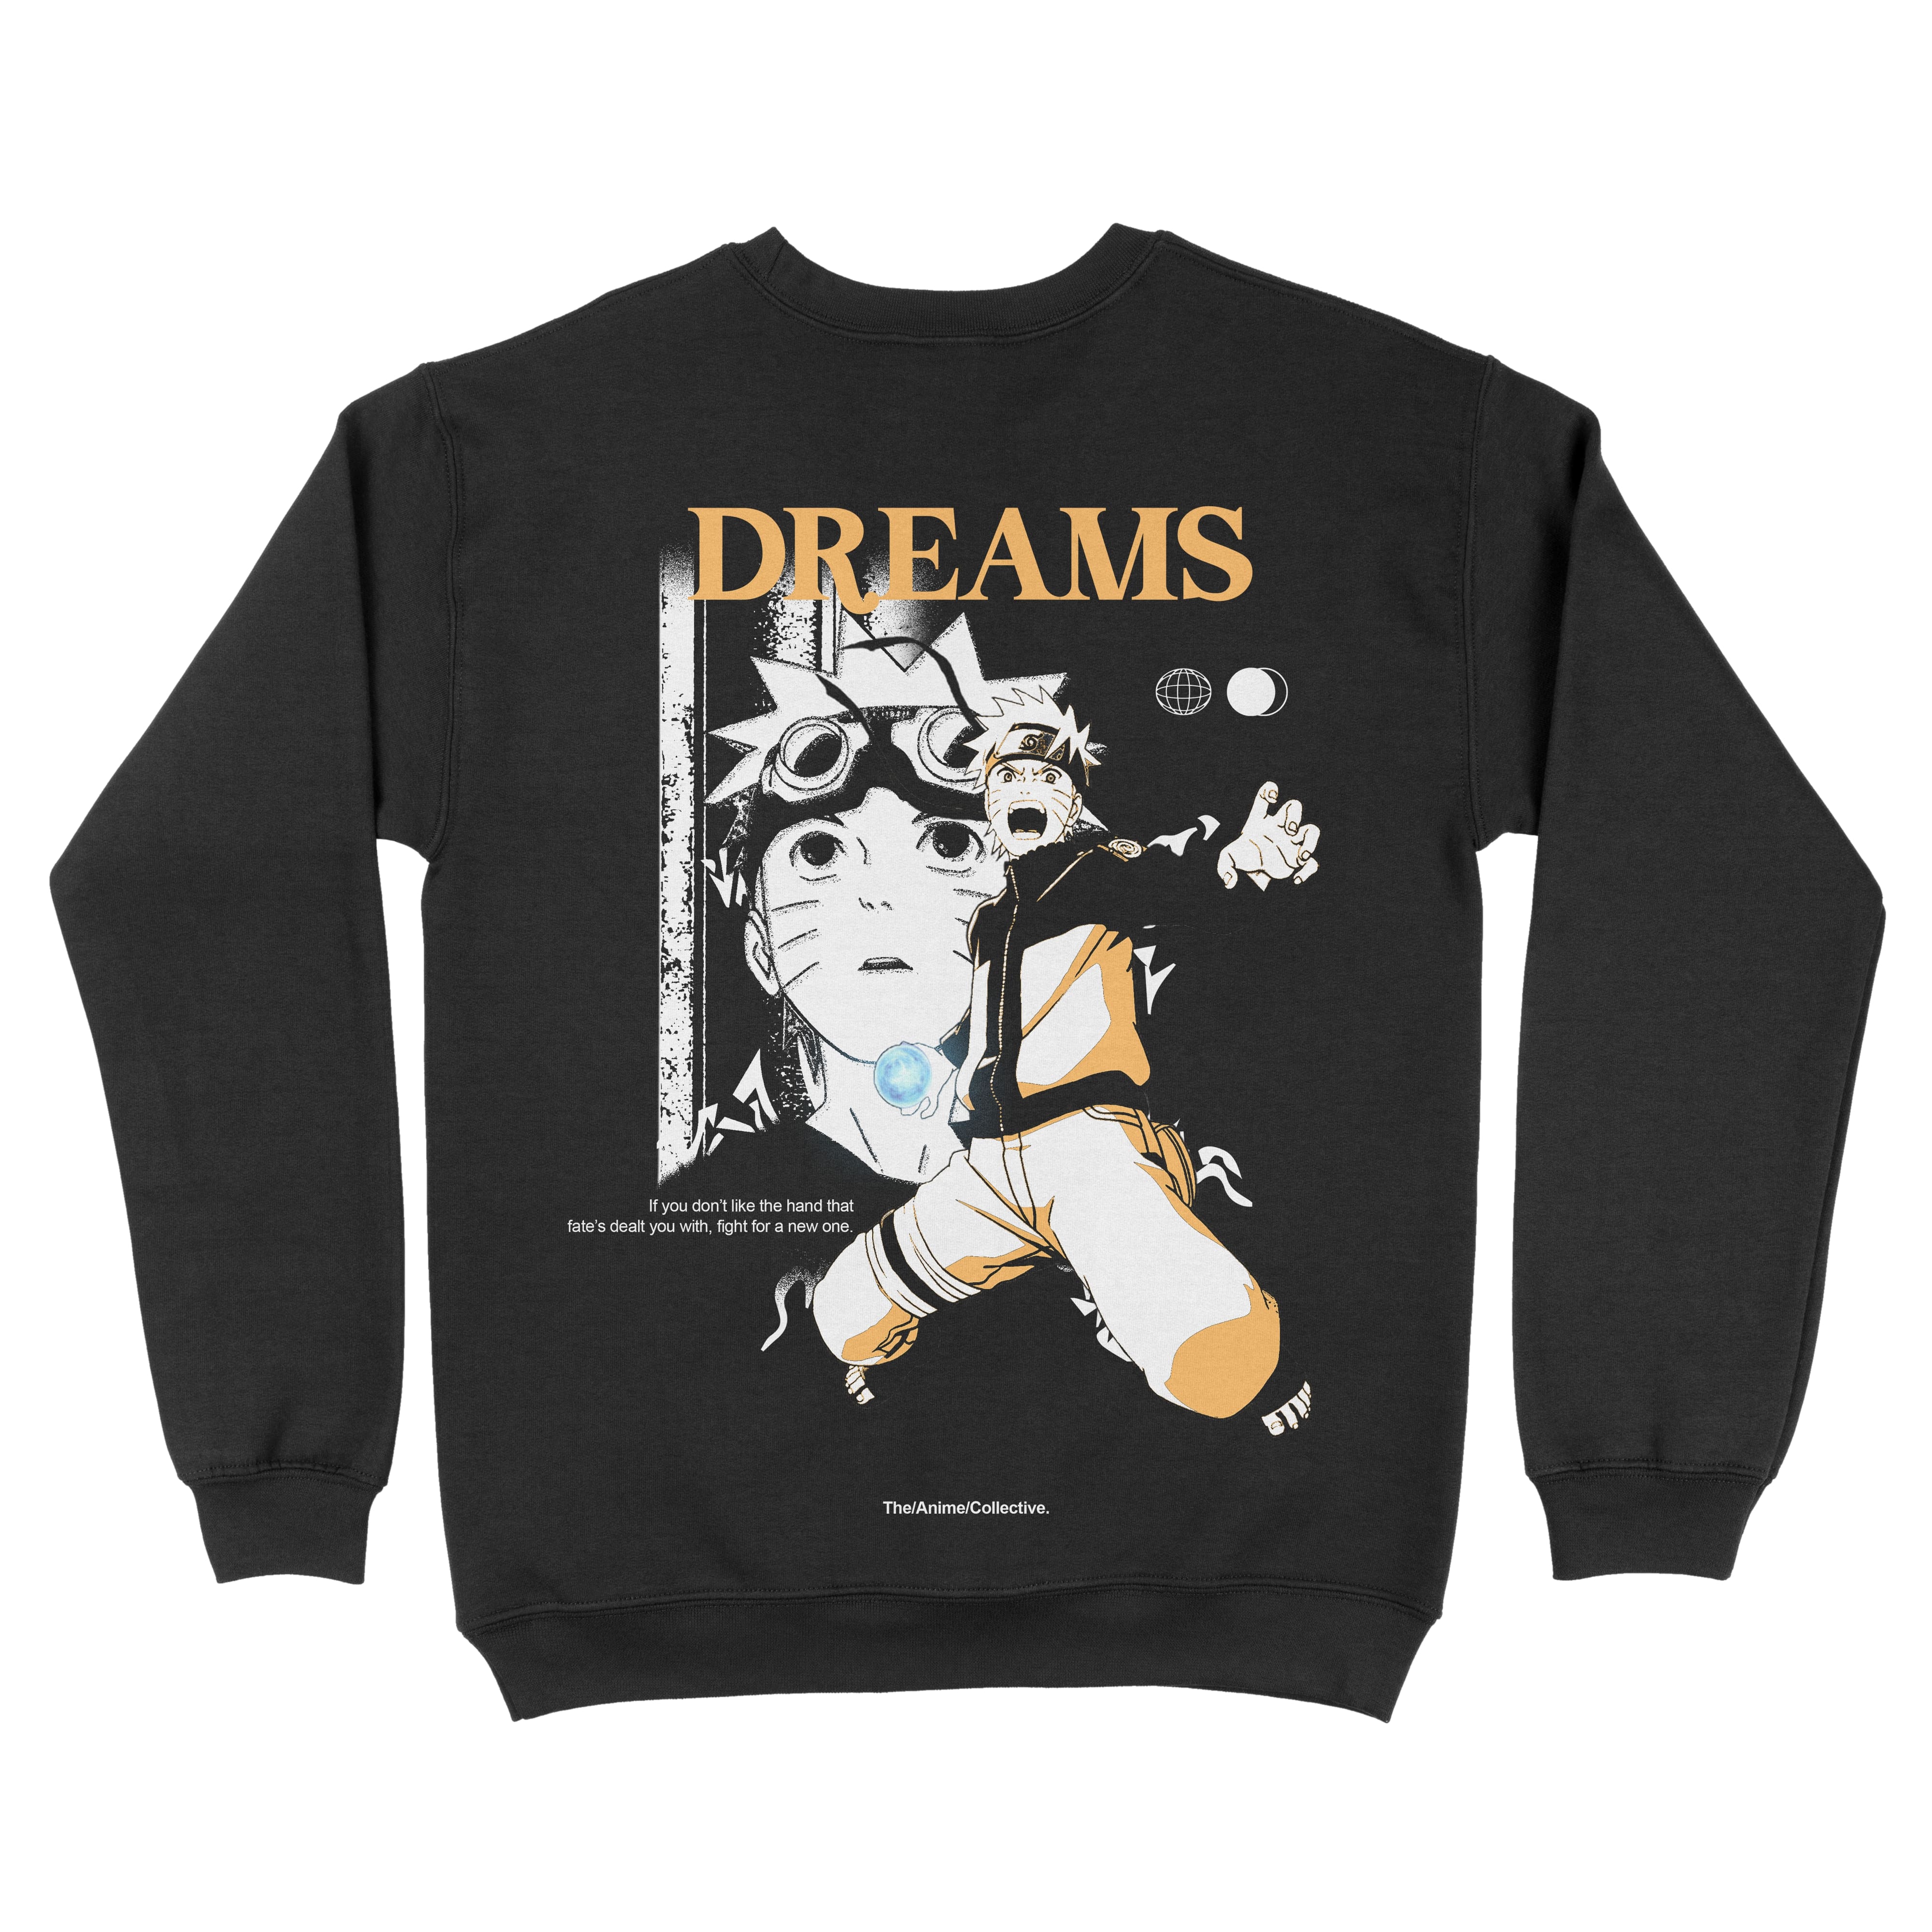 Uzumaki Naruto "Dreams" Sweatshirt | Naruto Shippuden